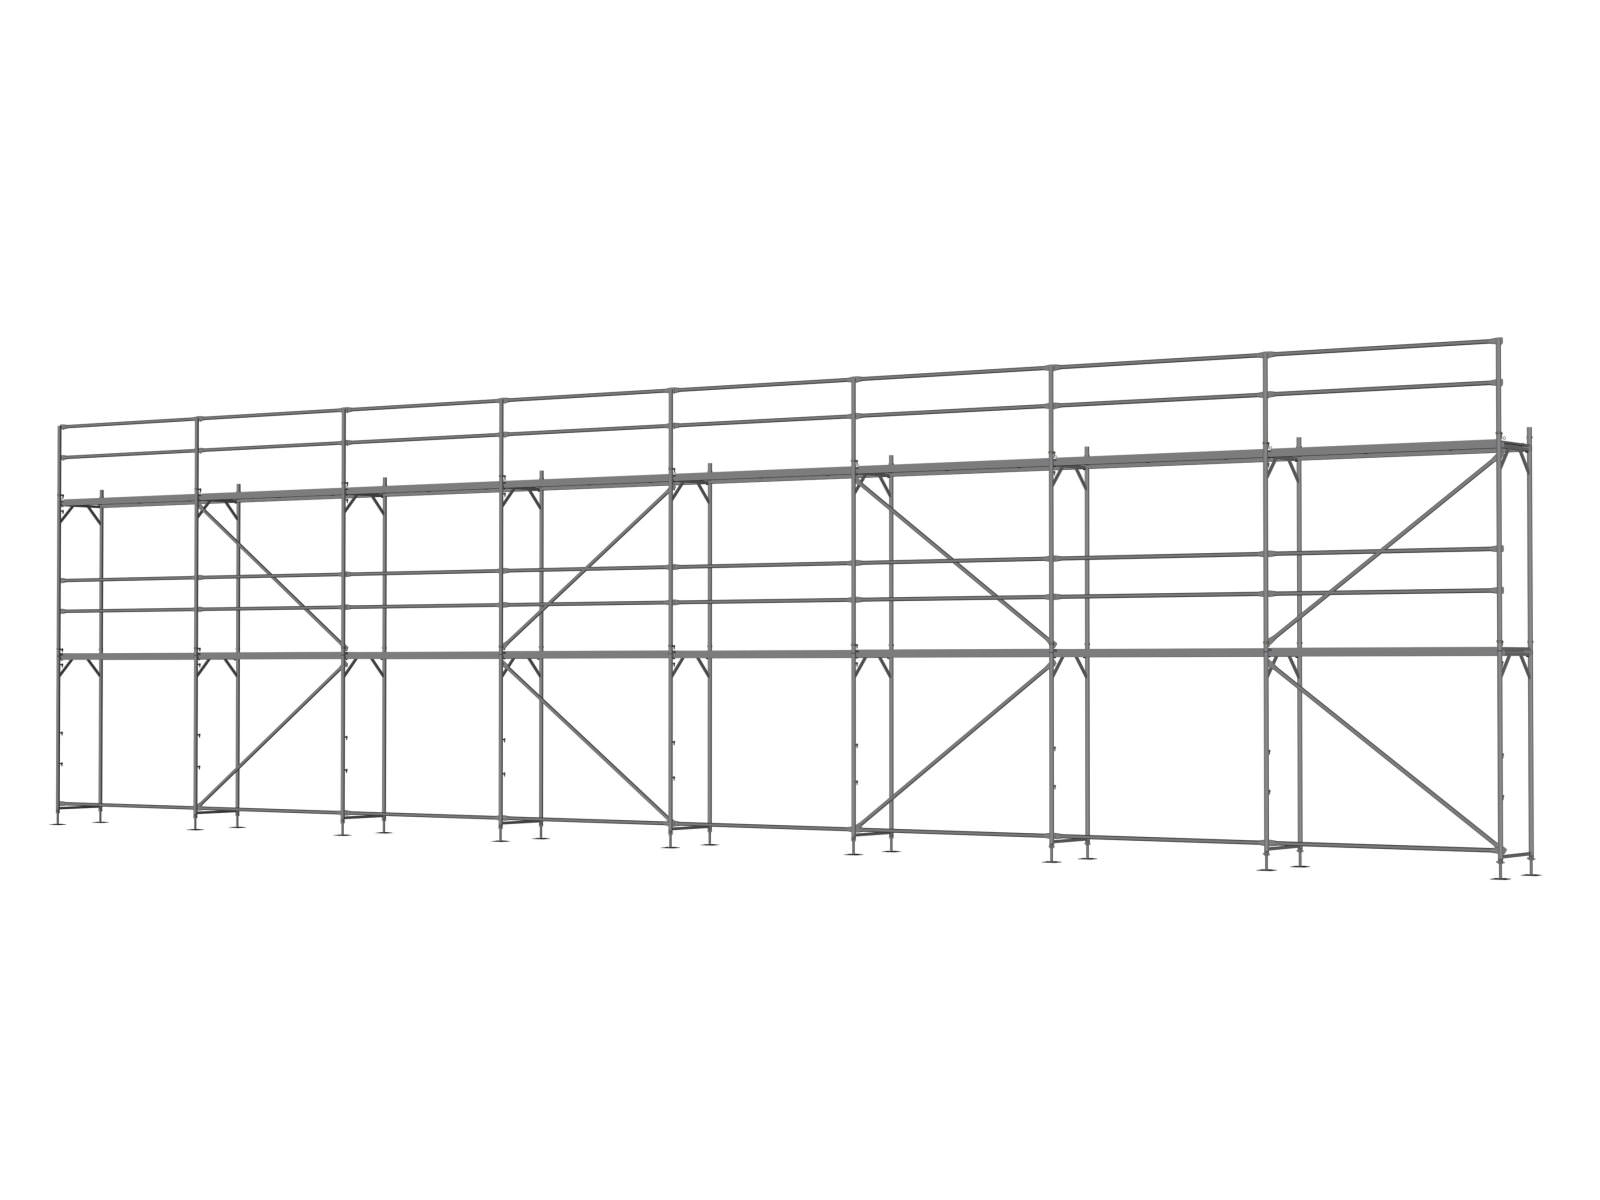 Alu Traufseitengerüst 120 qm - 2,5 m Felder - 20 m lang - 6 m Arbeitshöhe  - Basis-Gerüst